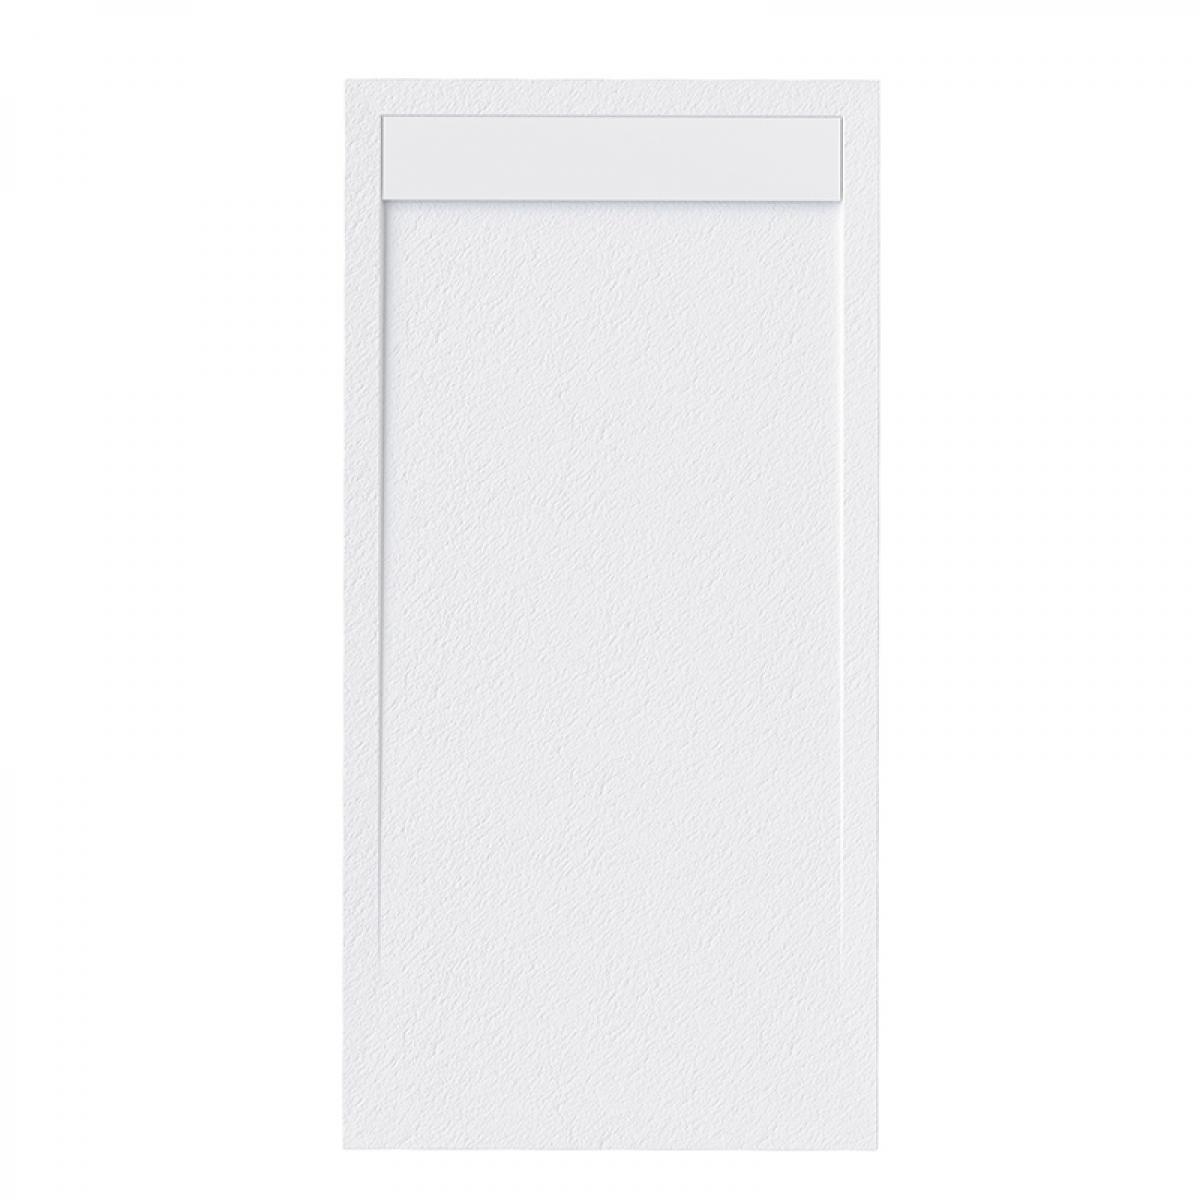 Sanycces - Receveur de douche clever 210 x 70 cm - Blanc - Receveur de douche